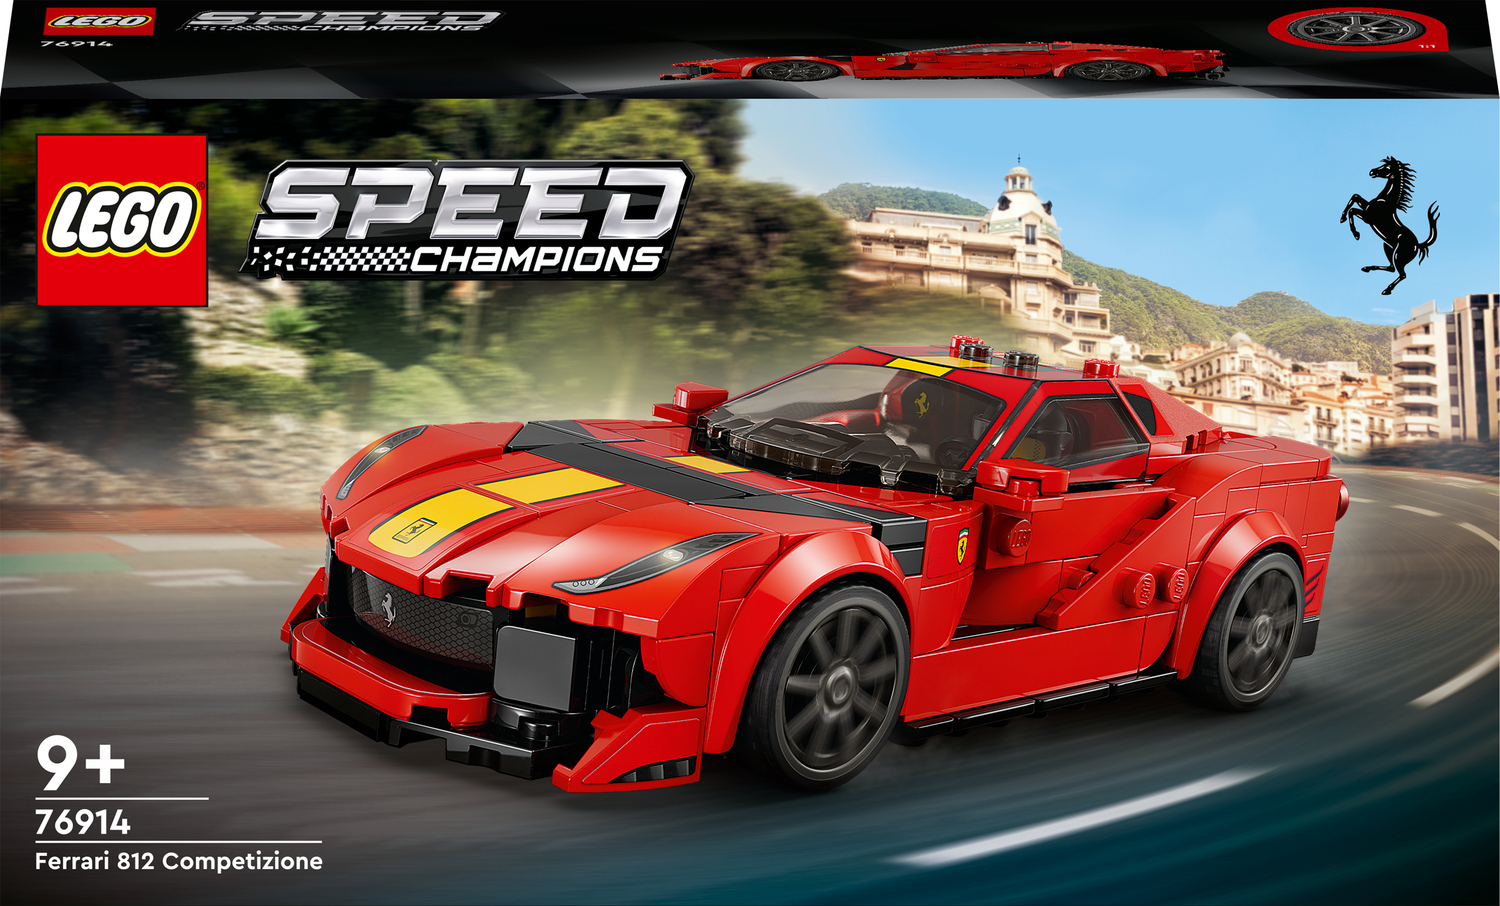 Ferrari 812 Competizione 76914, Speed Champions